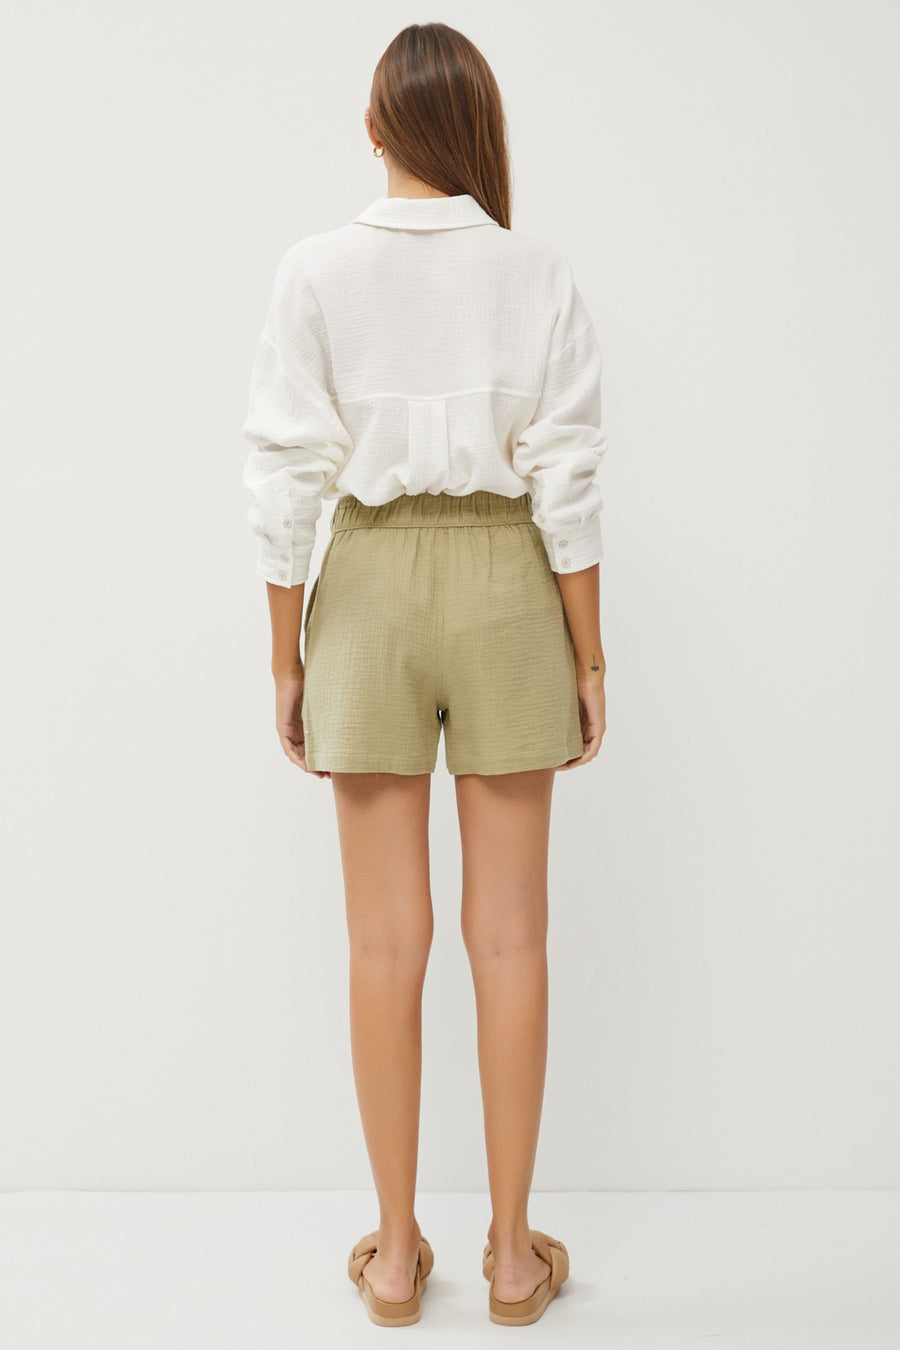 The Ellie Cotton Gauze Shorts